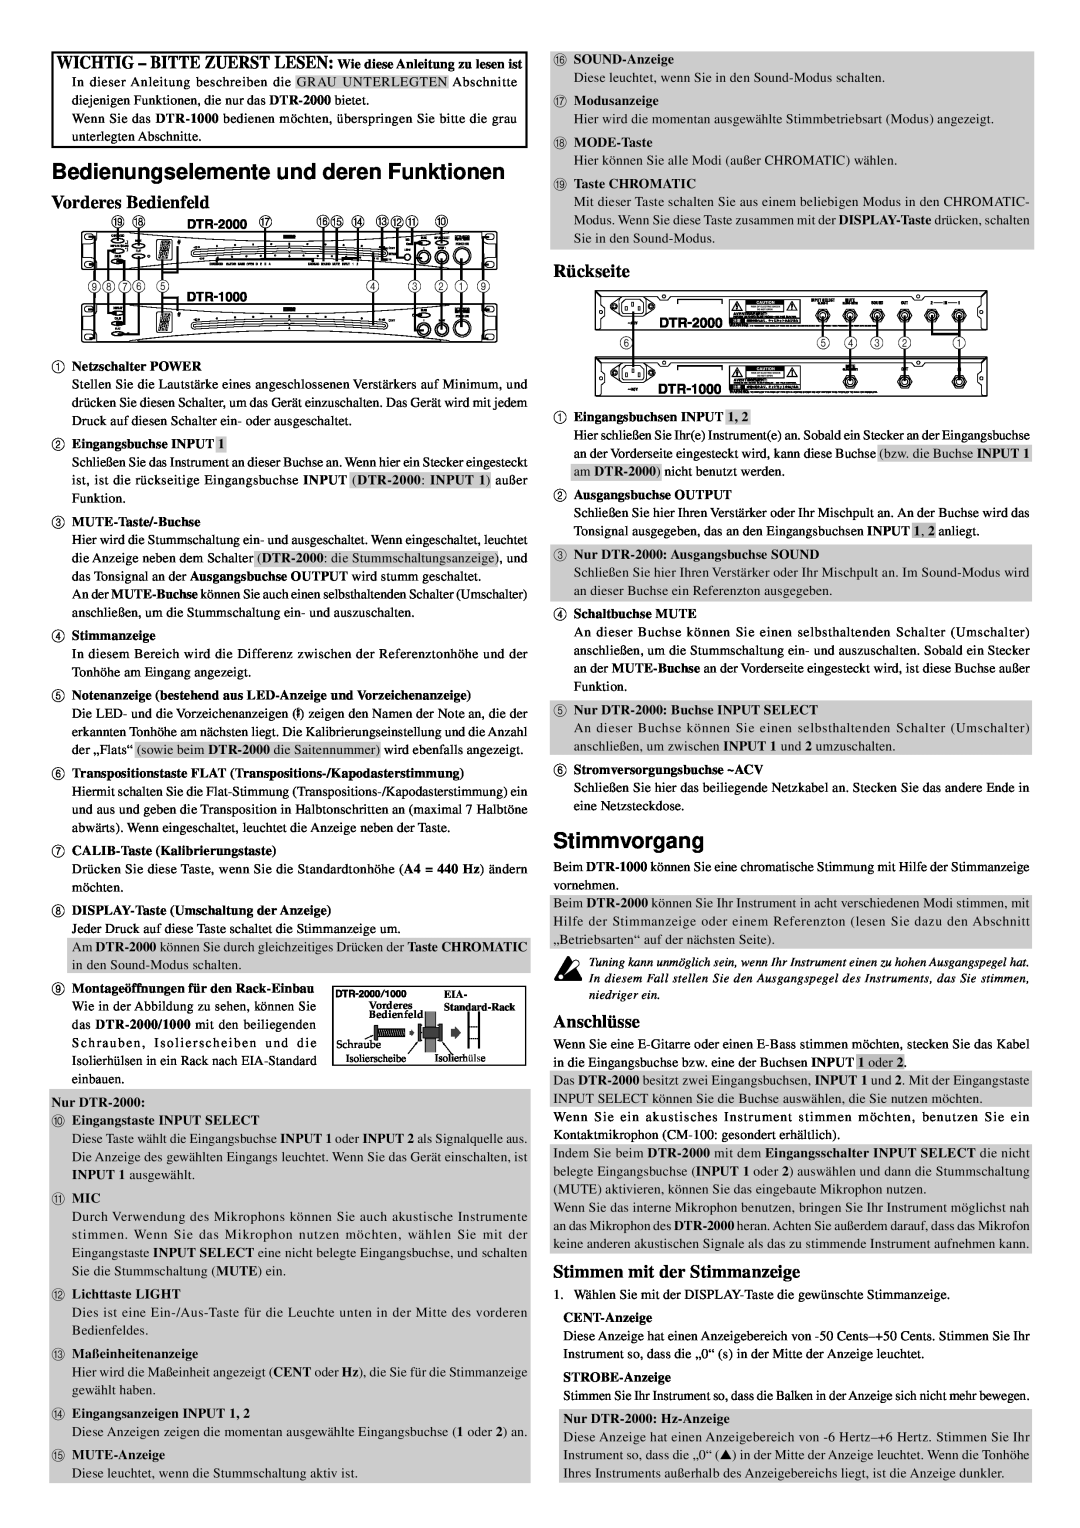 Korg DTR-2000 Bedienungselemente und deren Funktionen, Stimmvorgang, Vorderes Bedienfeld, Isolierhülse, Rückseite 